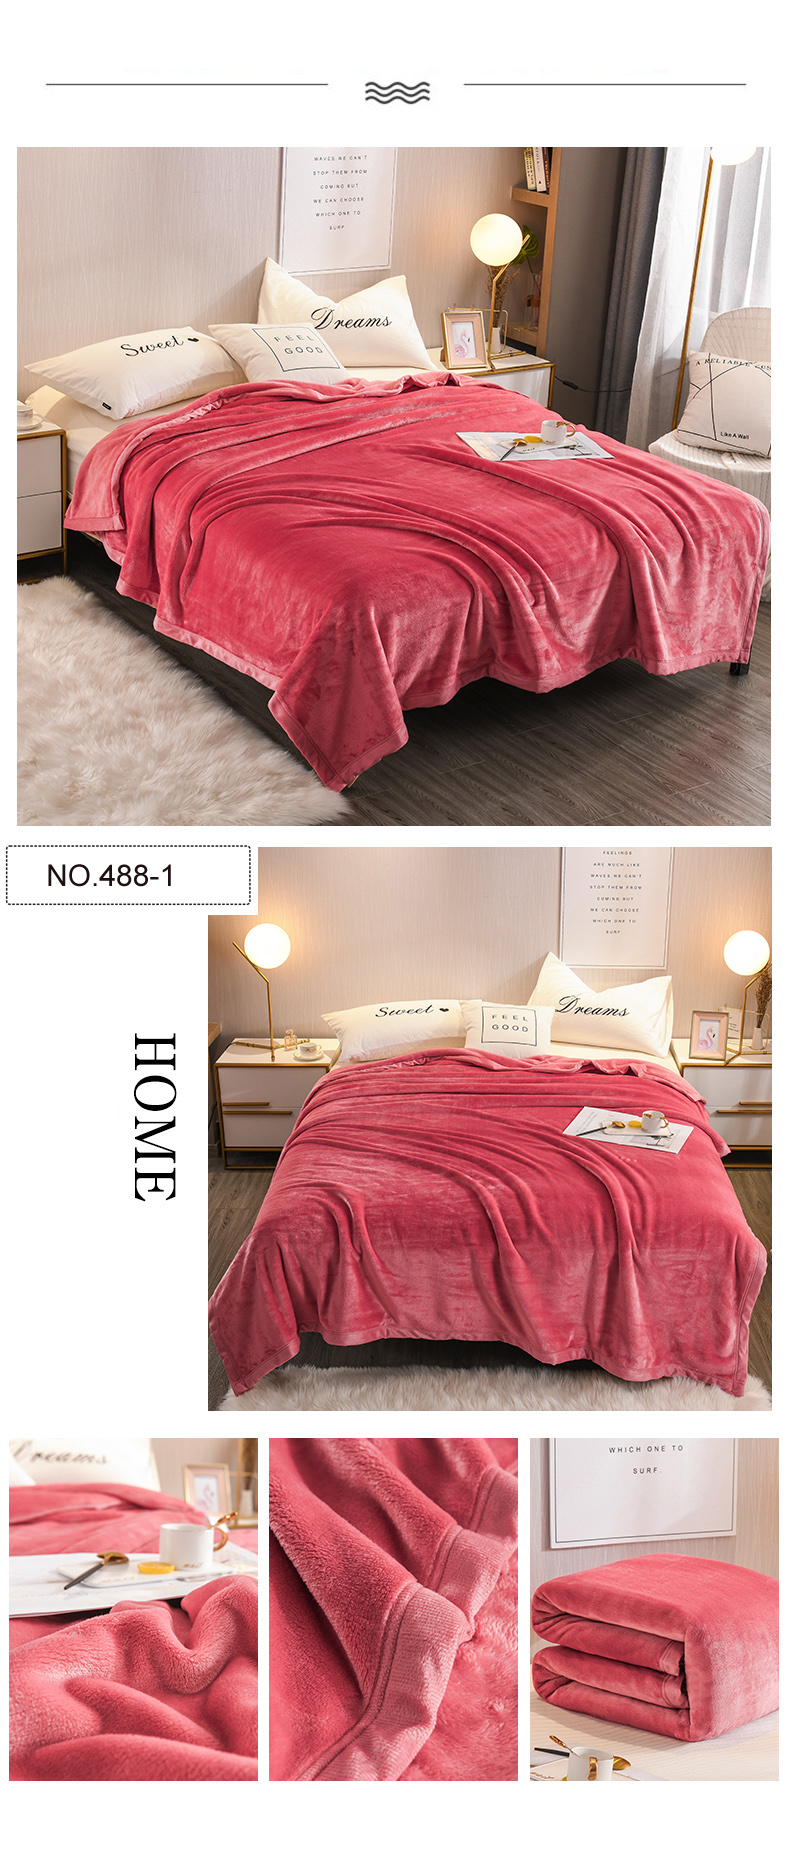 Lightweight Raschel Blanket For Single Bed